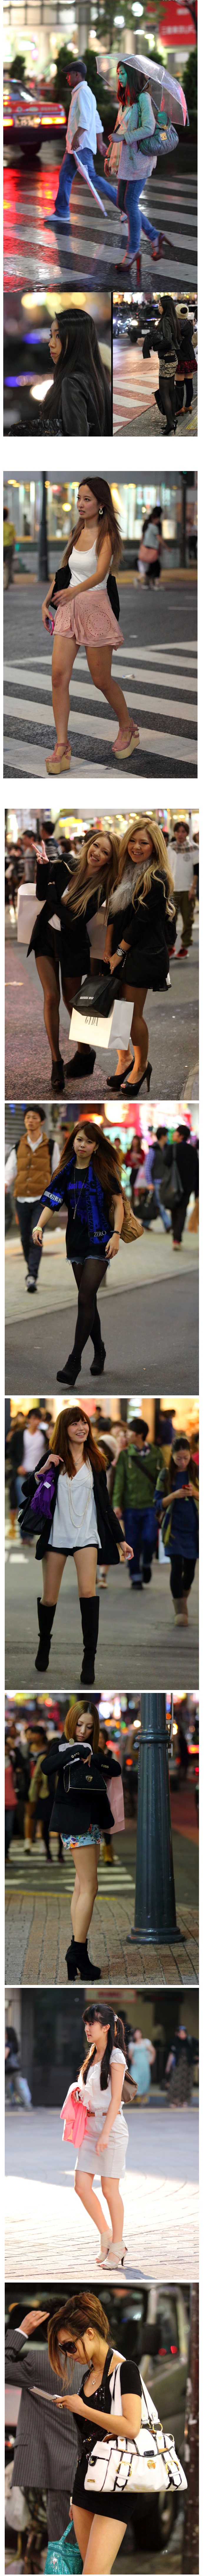 일본 여성들 길거리 패션2.jpg